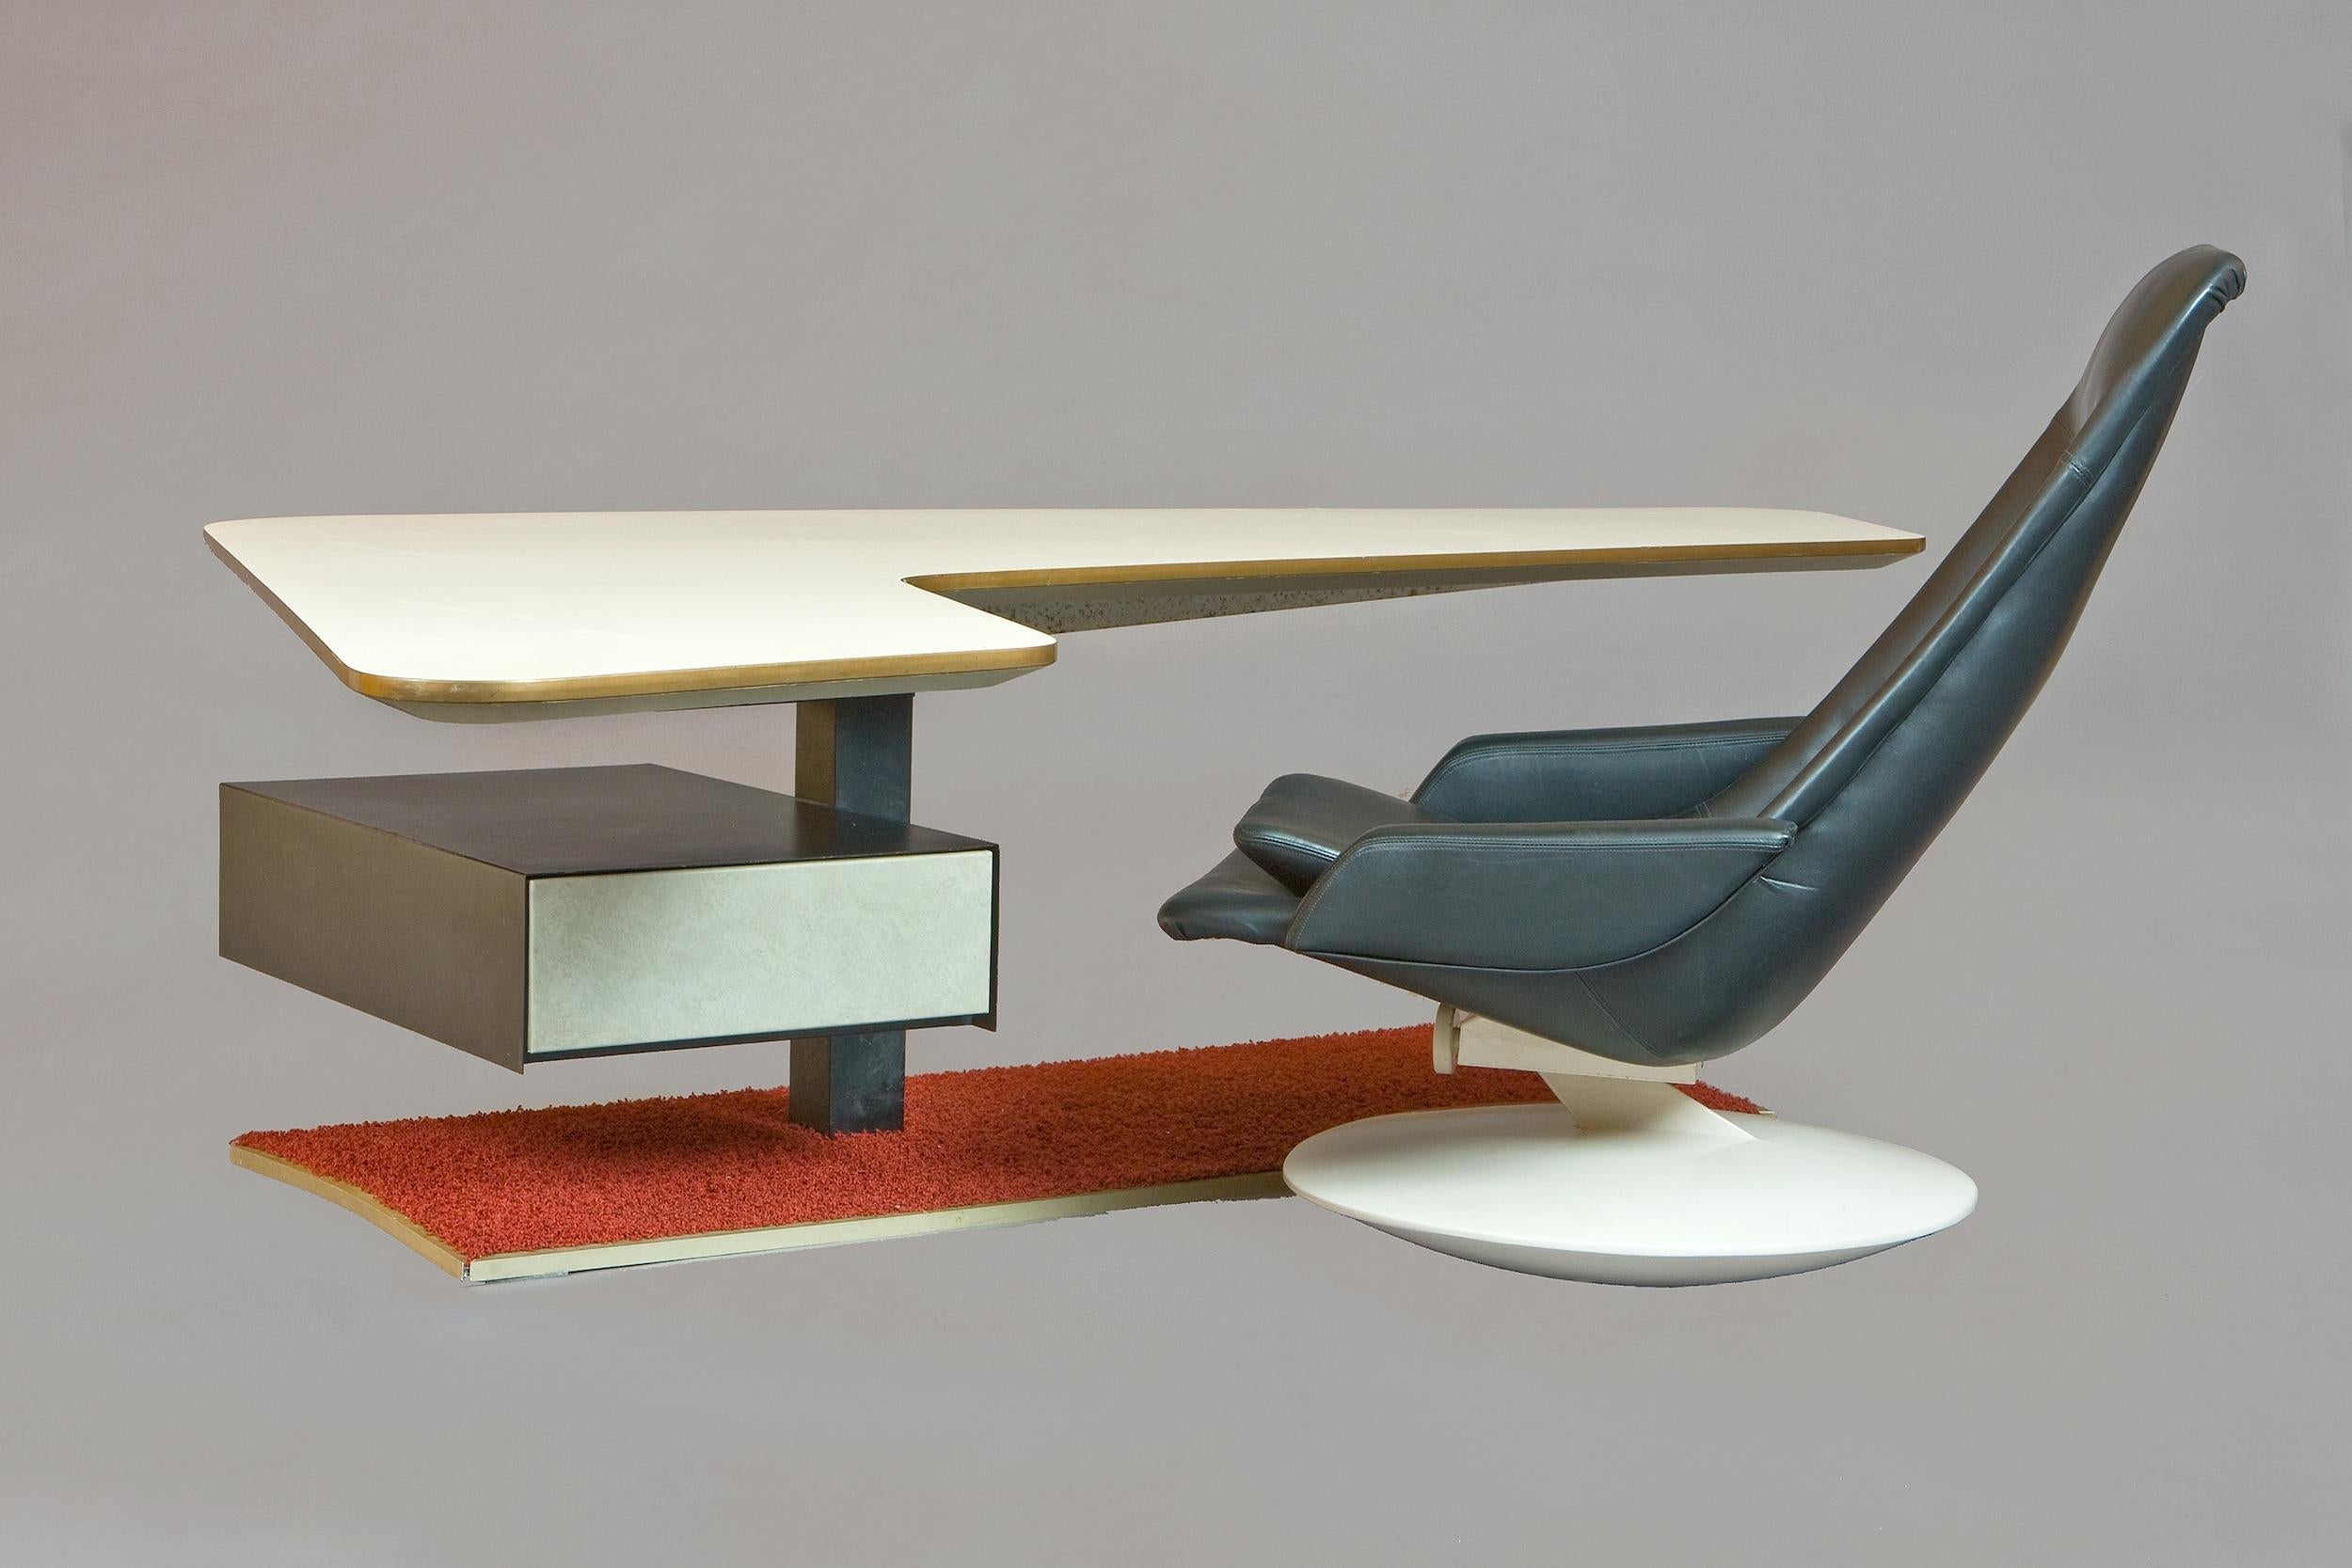 Frankreich, 1970er Jahre

Ein phänomenaler Bumerang-Schreibtisch aus der Raumfahrt. Eine wunderschön langgestreckte und abgewinkelte Formica-Platte ragt über eine Stahlsäule mit einer gefederten Schublade mit Fächern, die auf einem gusseisernen